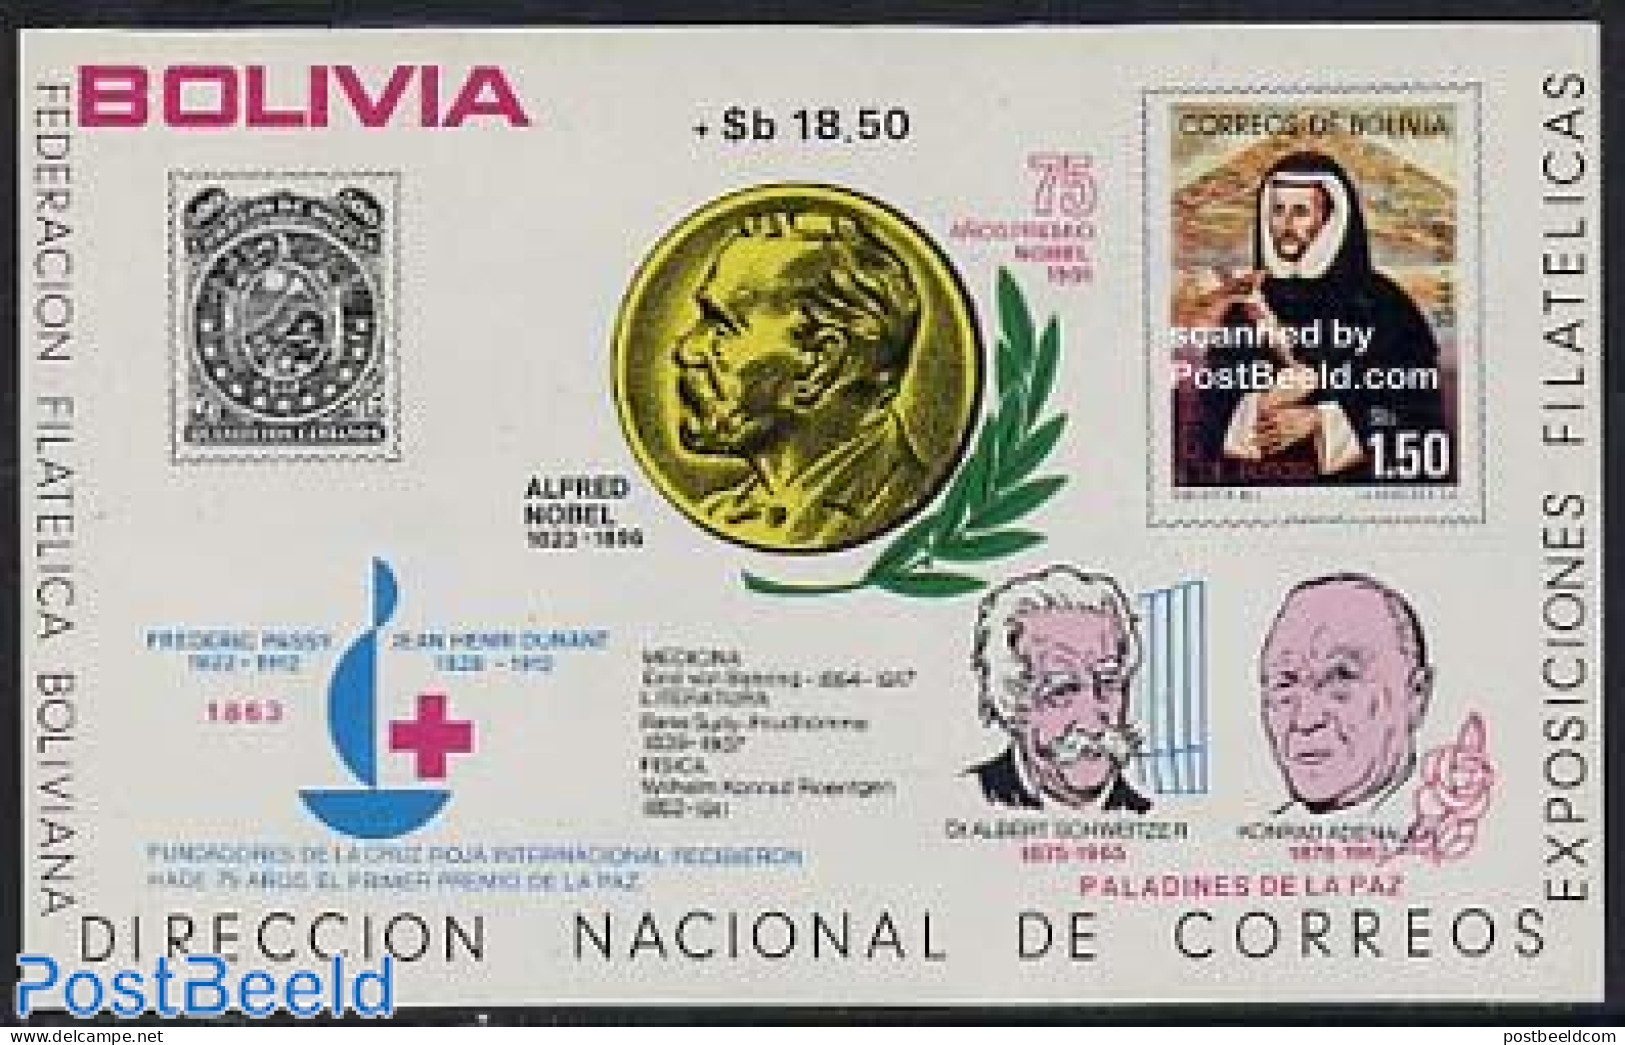 Bolivia 1976 Nobel Prize S/s, Mint NH, History - Nobel Prize Winners - Stamps On Stamps - Nobelpreisträger